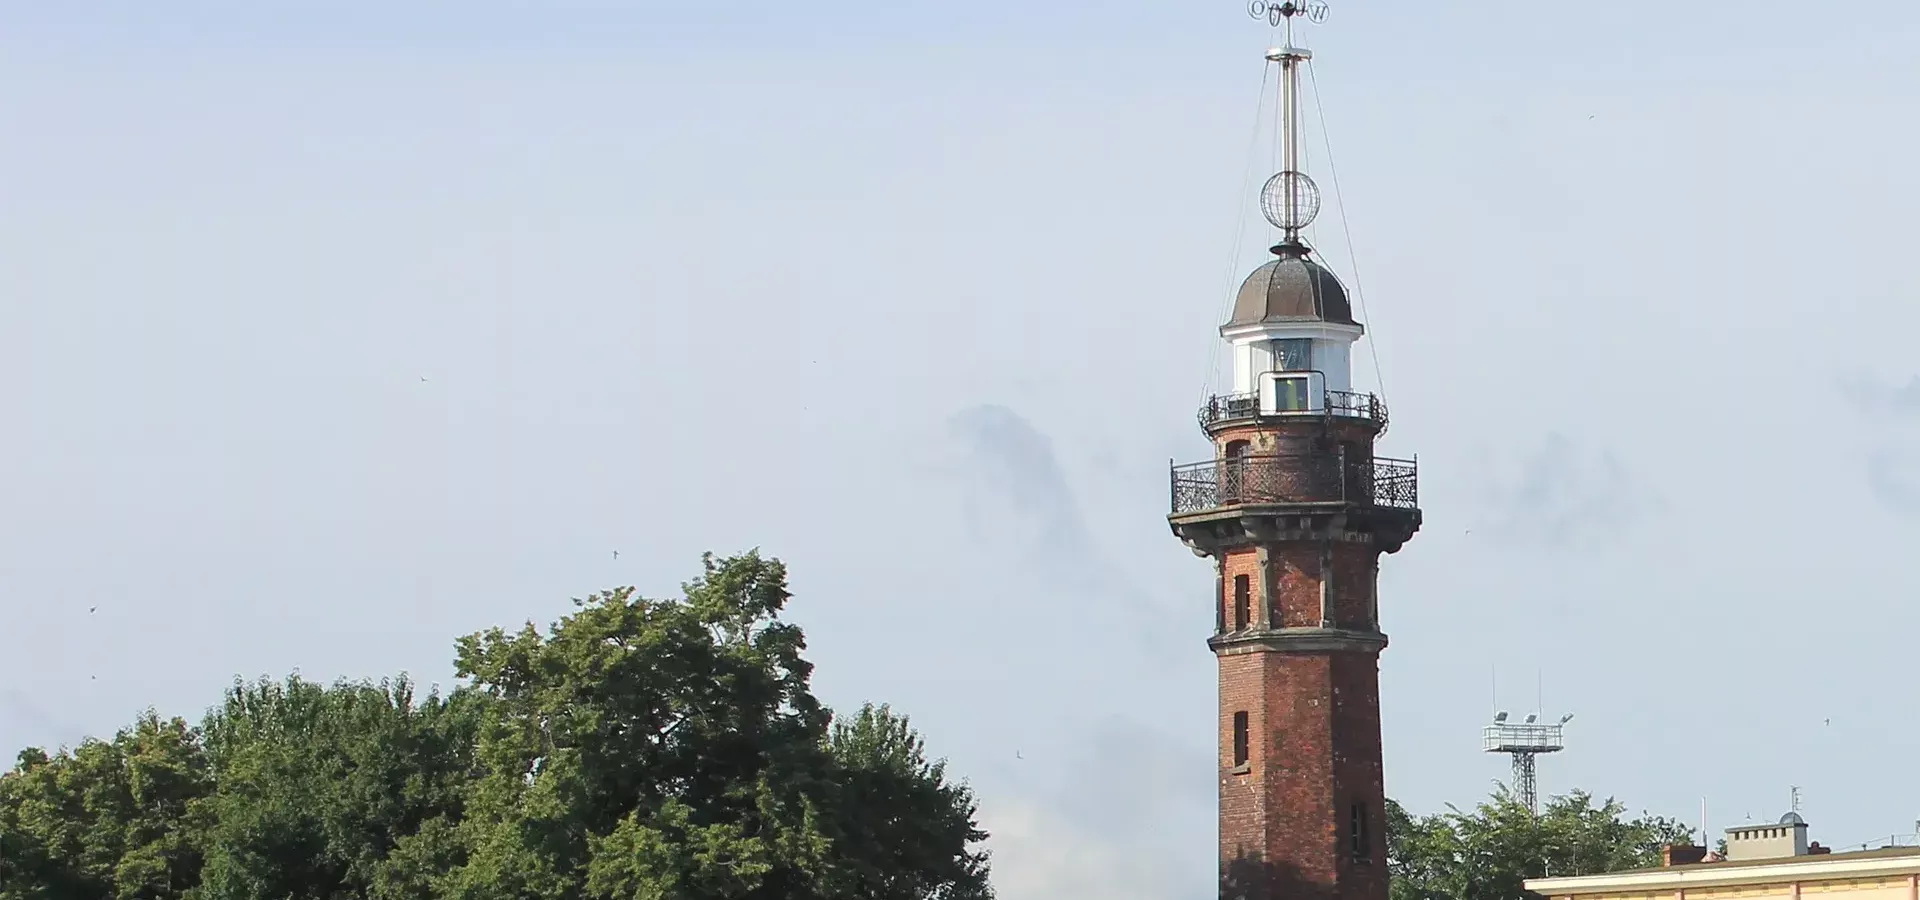 Nowy Port Lighthouse in Gdansk